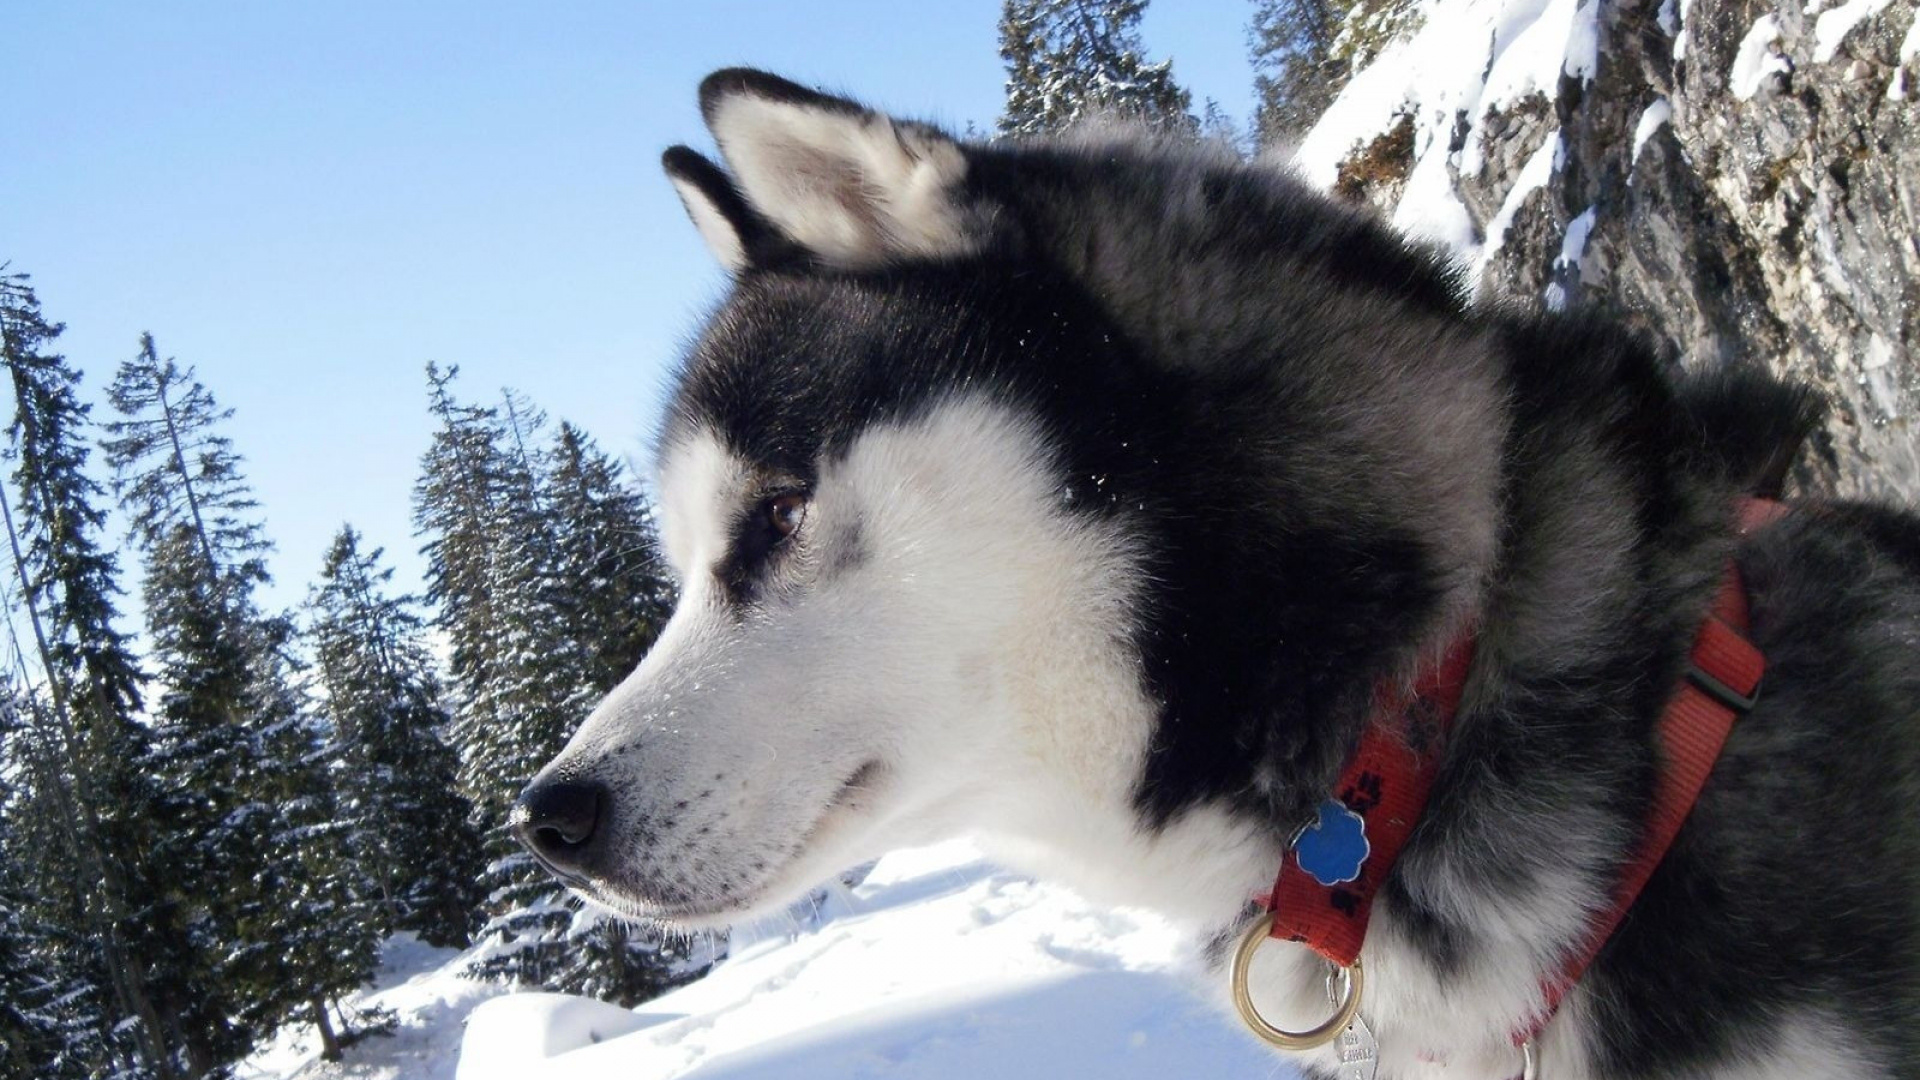 阿拉斯加雪橇犬, 赫斯基, 萨哈林赫斯基, 雪橇狗, 哈士奇 壁纸 1920x1080 允许